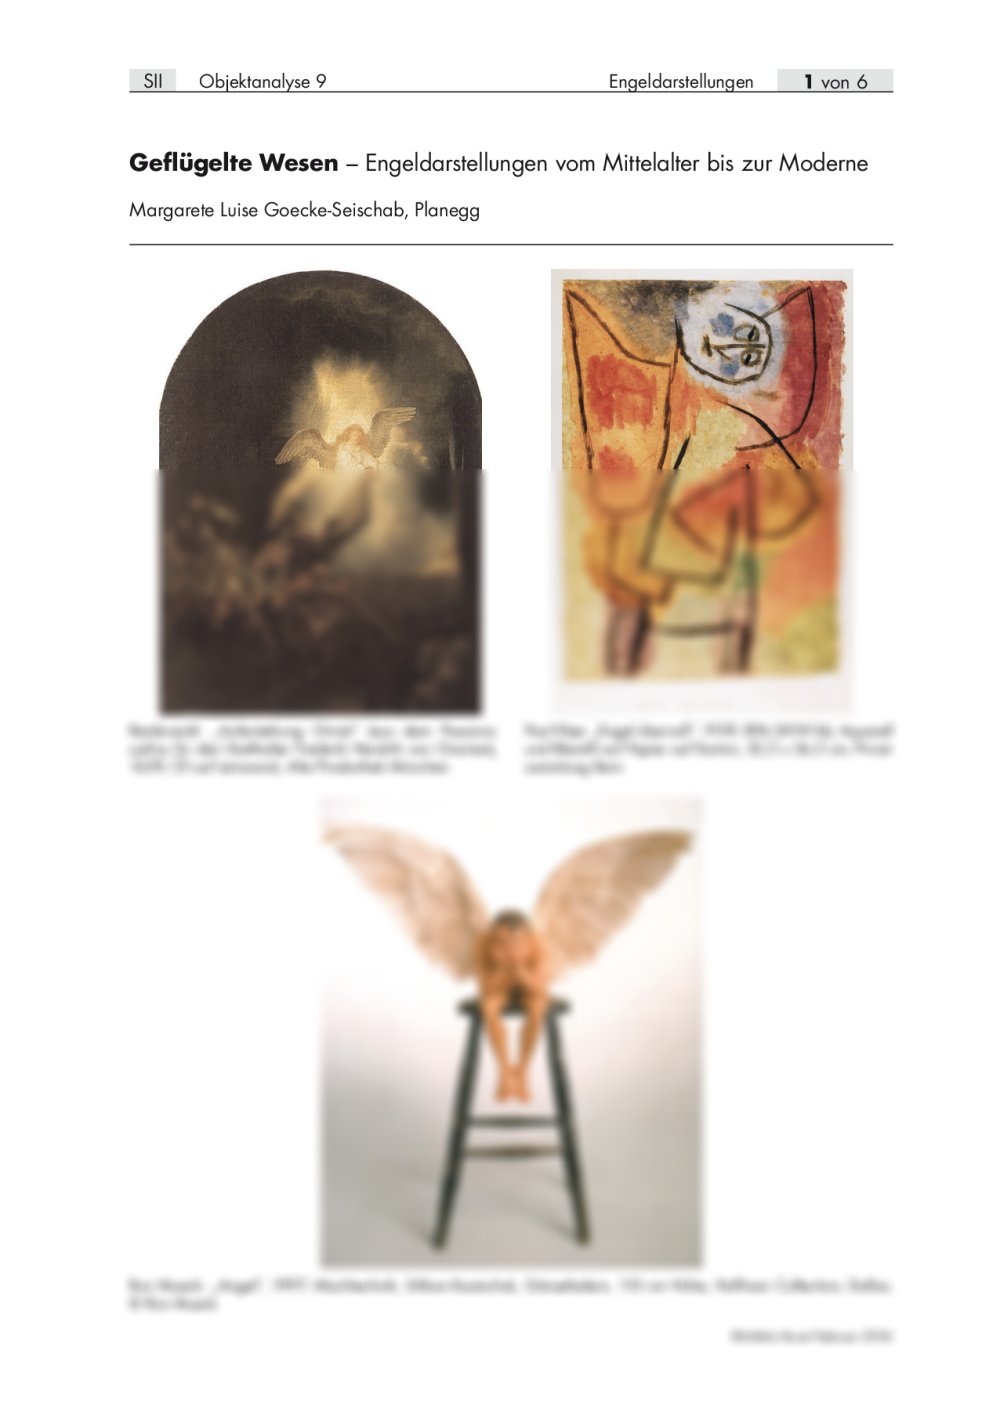 Engeldarstellungen vom Mittelalter bis zur Moderne - Seite 1